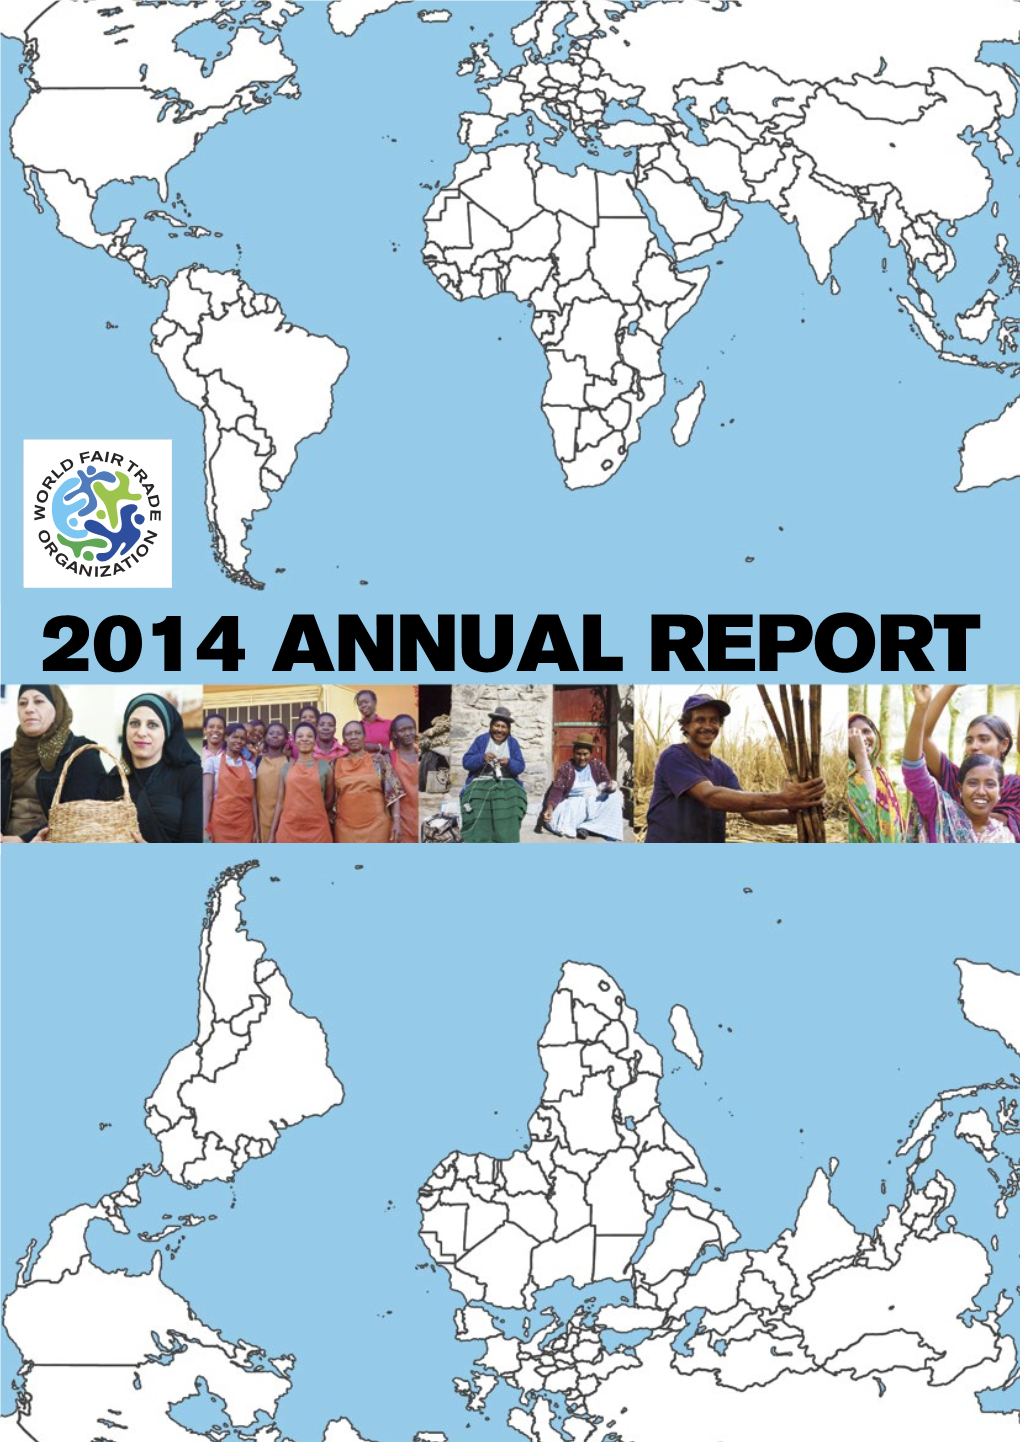 2014 Annual Report I